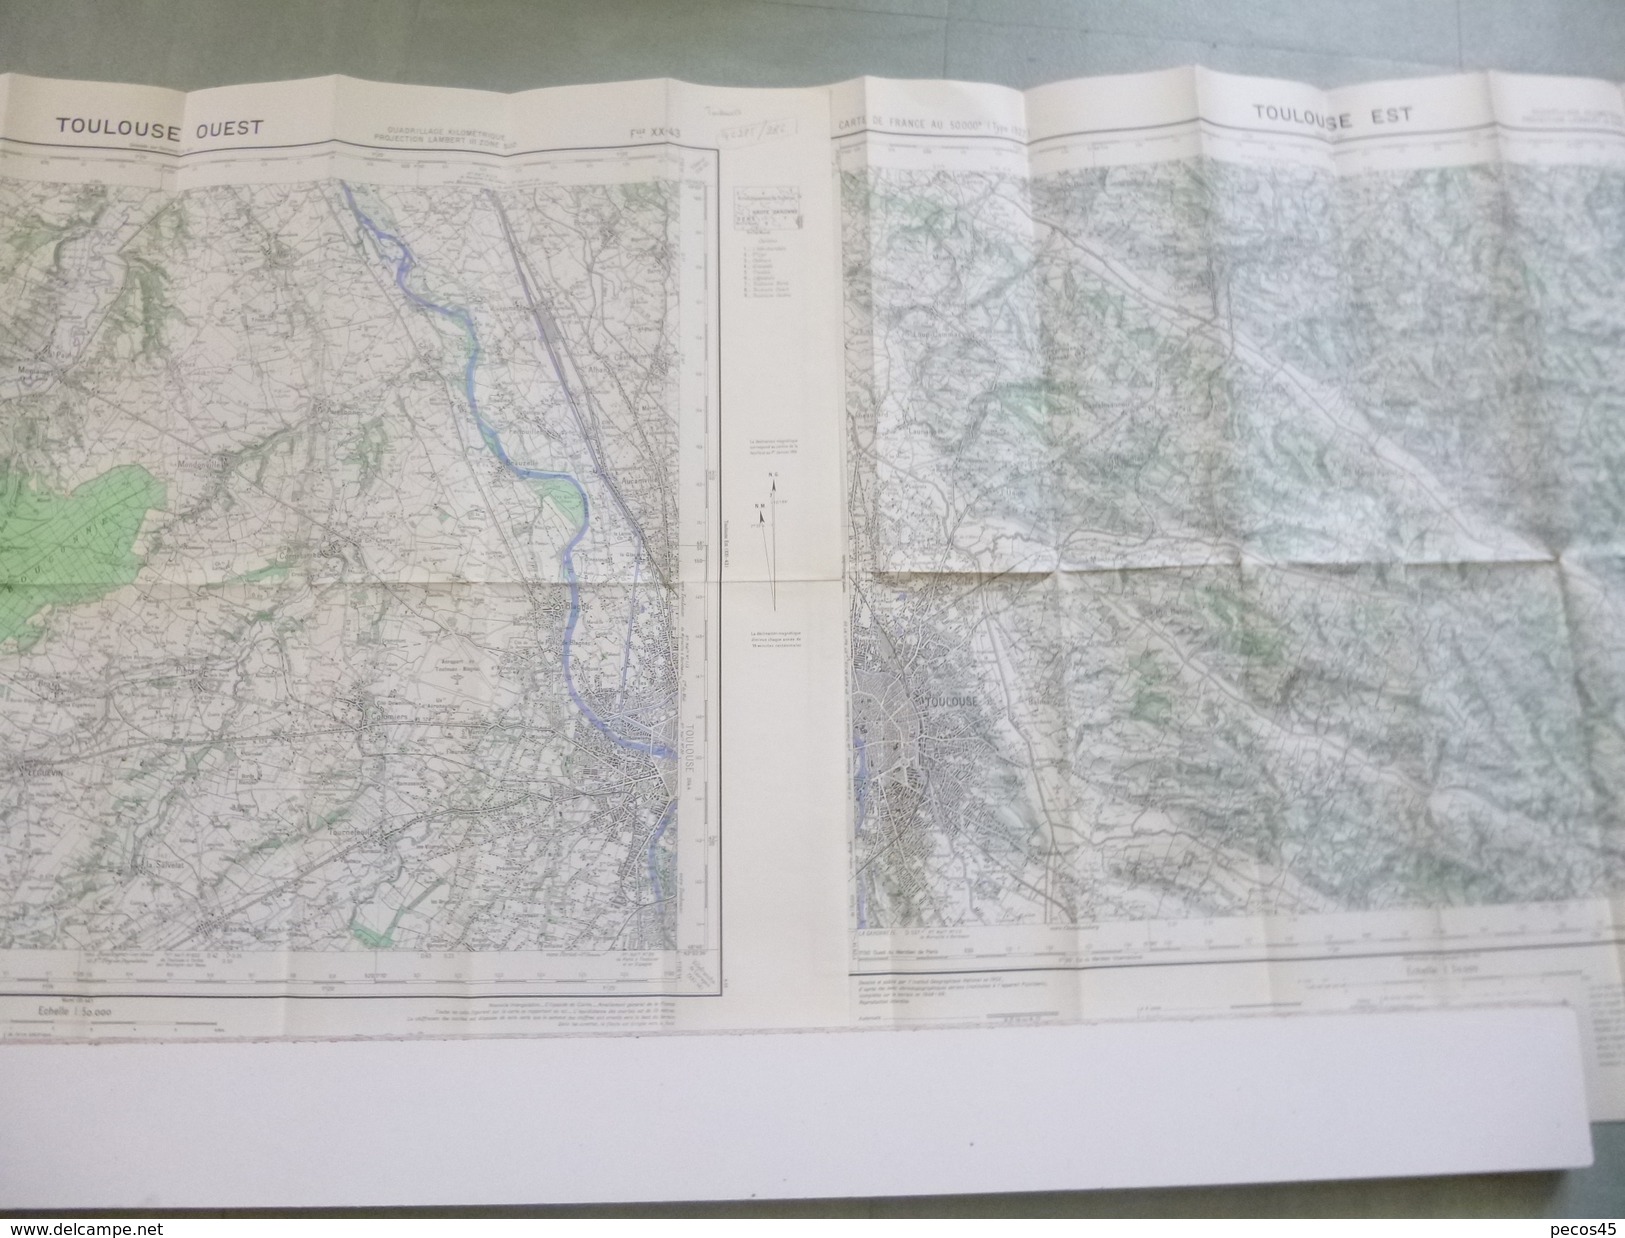 2 Cartes I.G.N. : TOULOUSE Ouest Et Est - 1 / 50 000ème - 1948 / 49 - 1951 / 52. - Topographical Maps